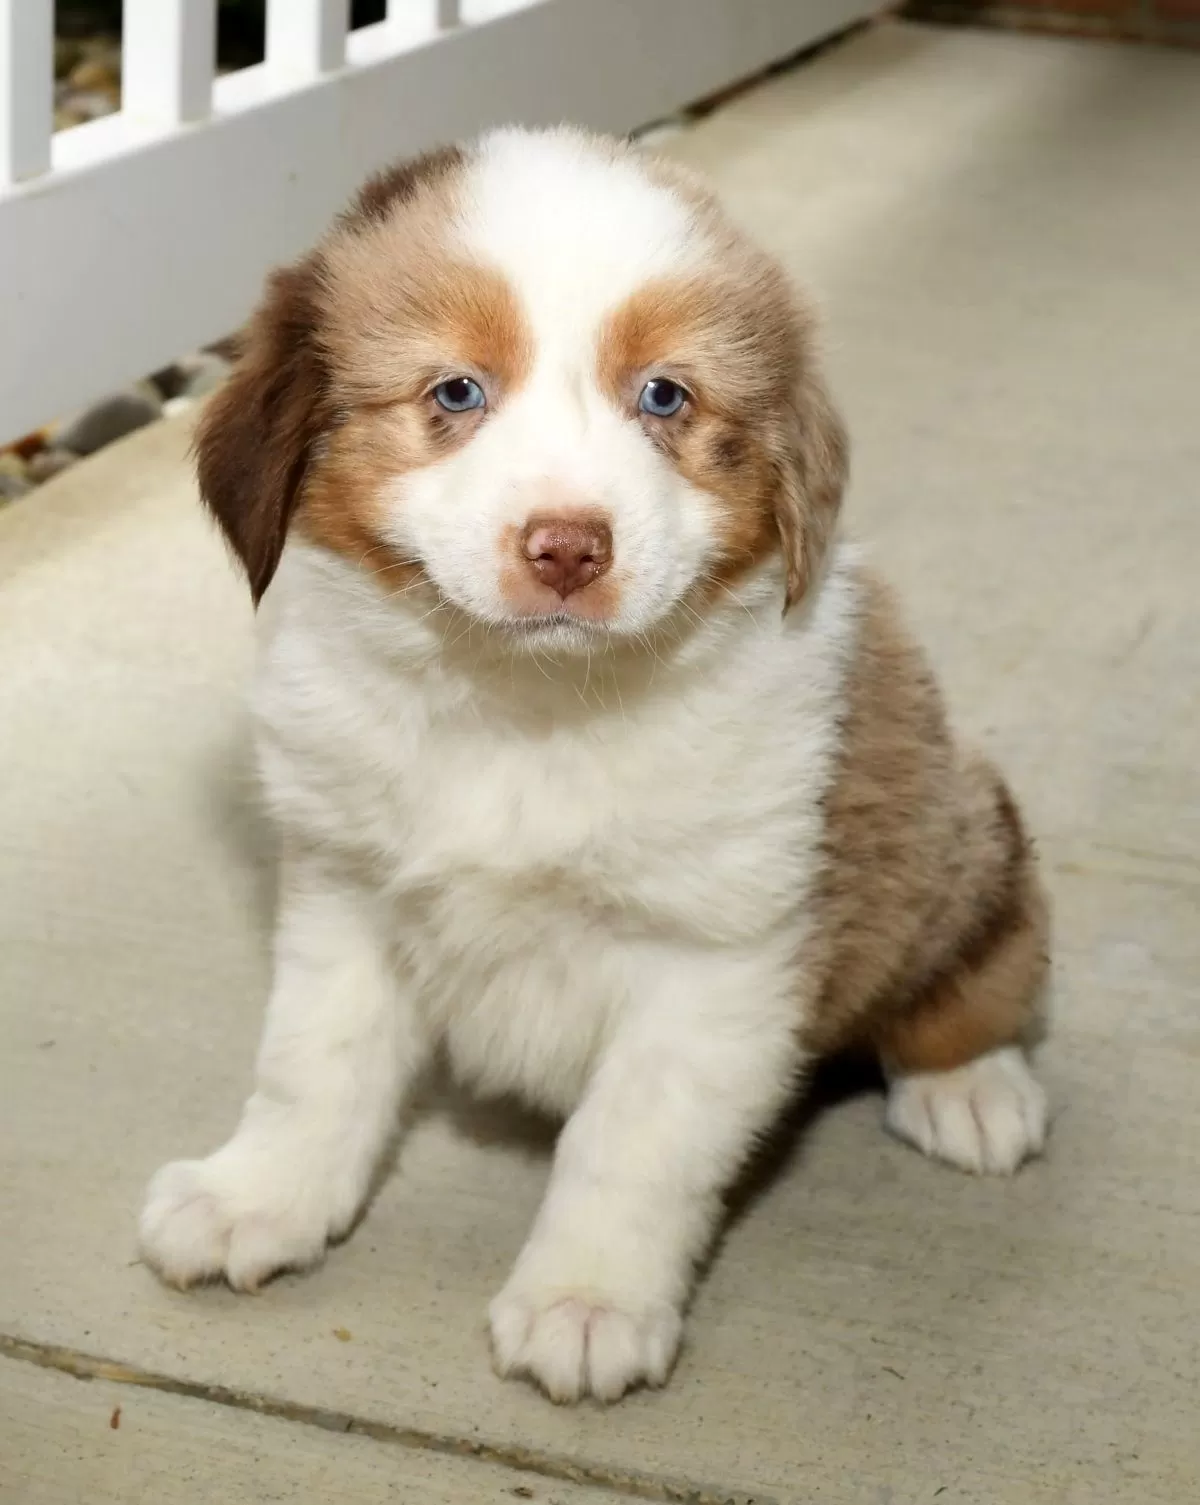 Puppy Name: Bentley